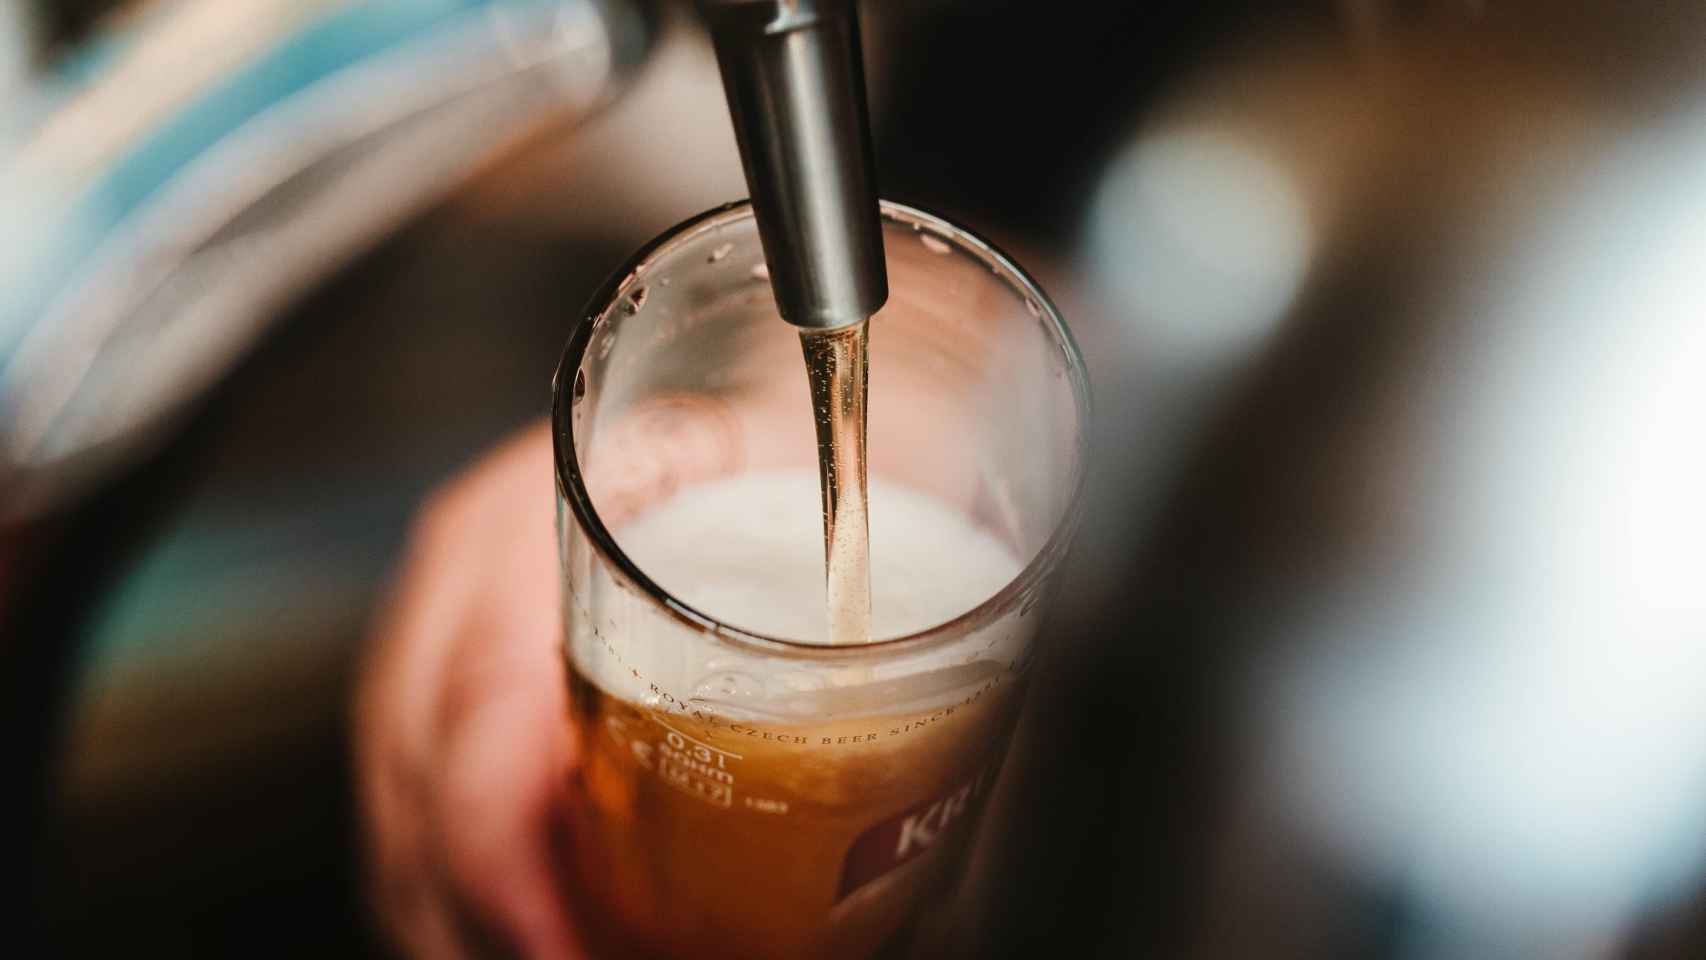 Un camarero sirve una cerveza en la barra de un bar.